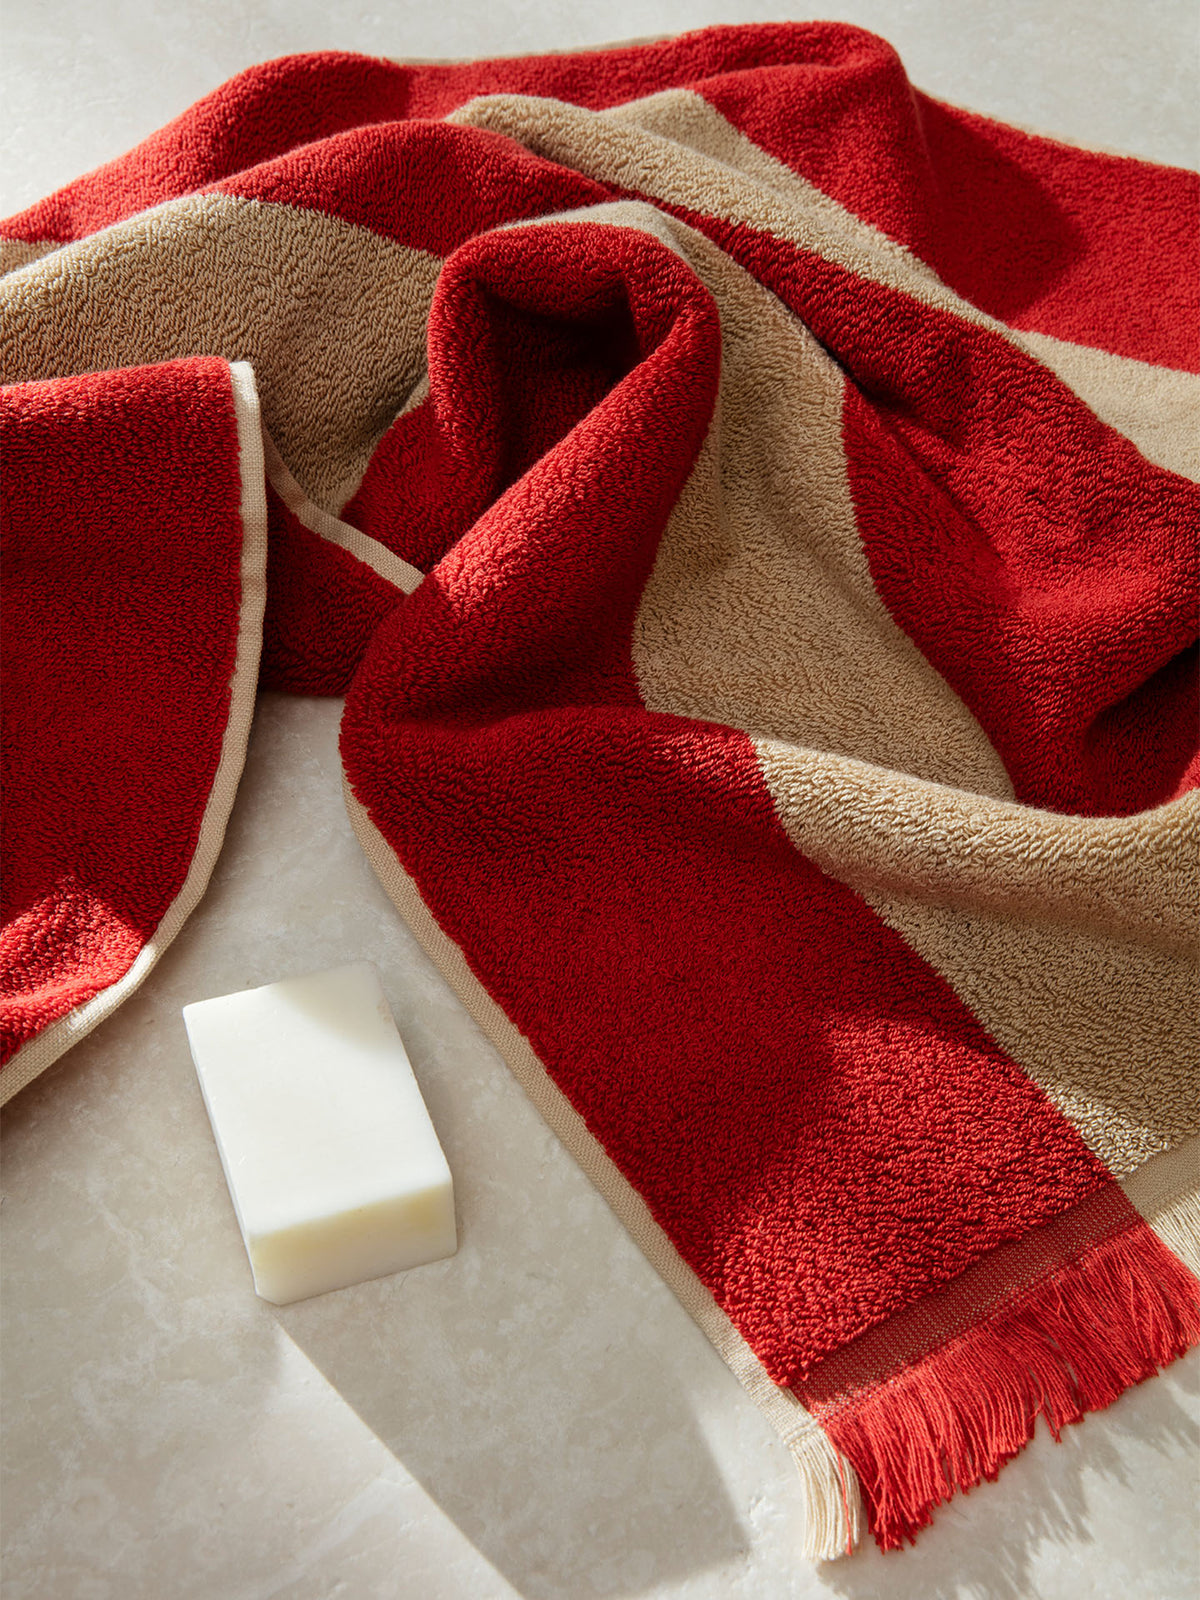 Alee Handtuch in Beige / Rot präsentiert im Onlineshop von KAQTU Design AG. Handtuch ist von Ferm Living